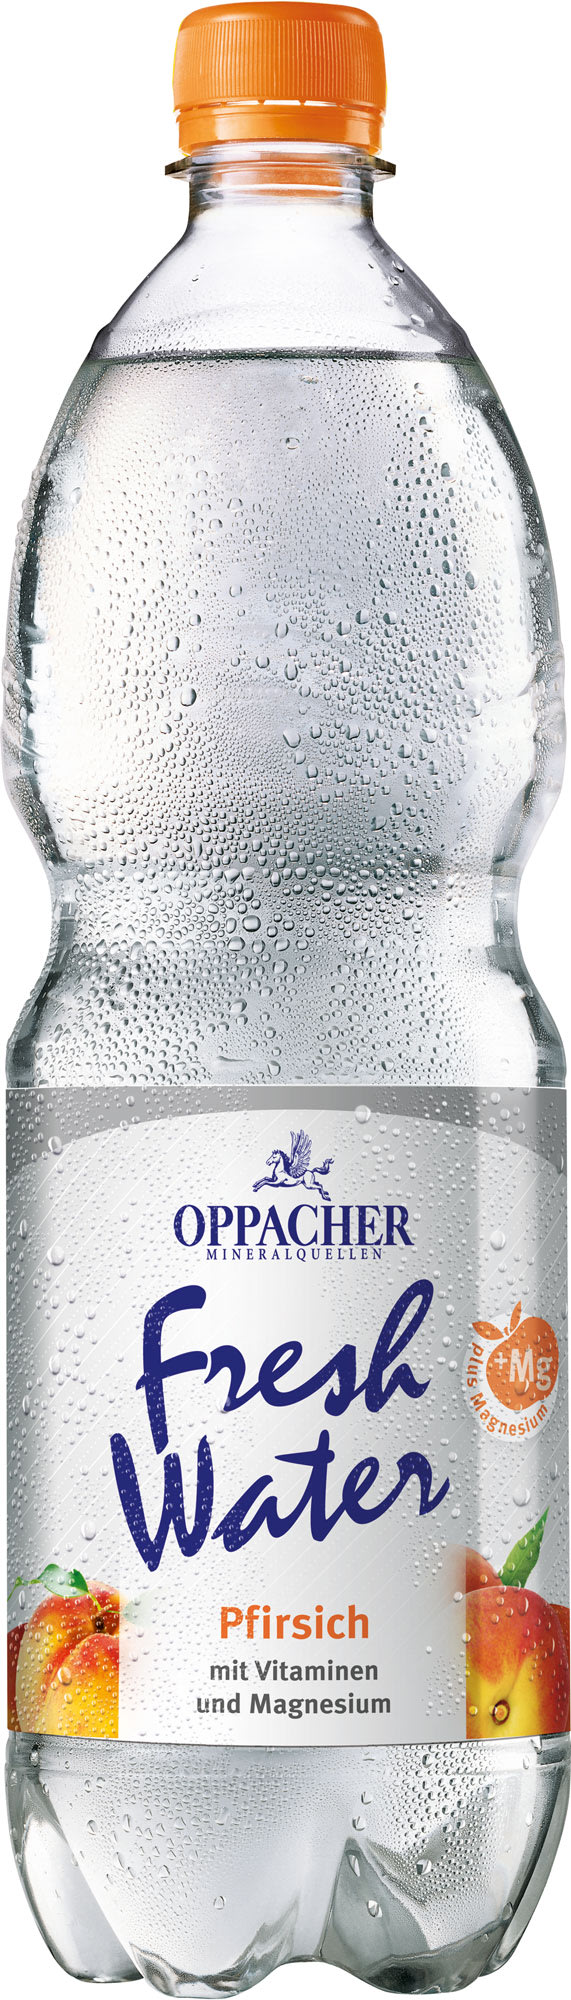 Oppacher Fresh Water Pfirsich 1 l PET Einweg